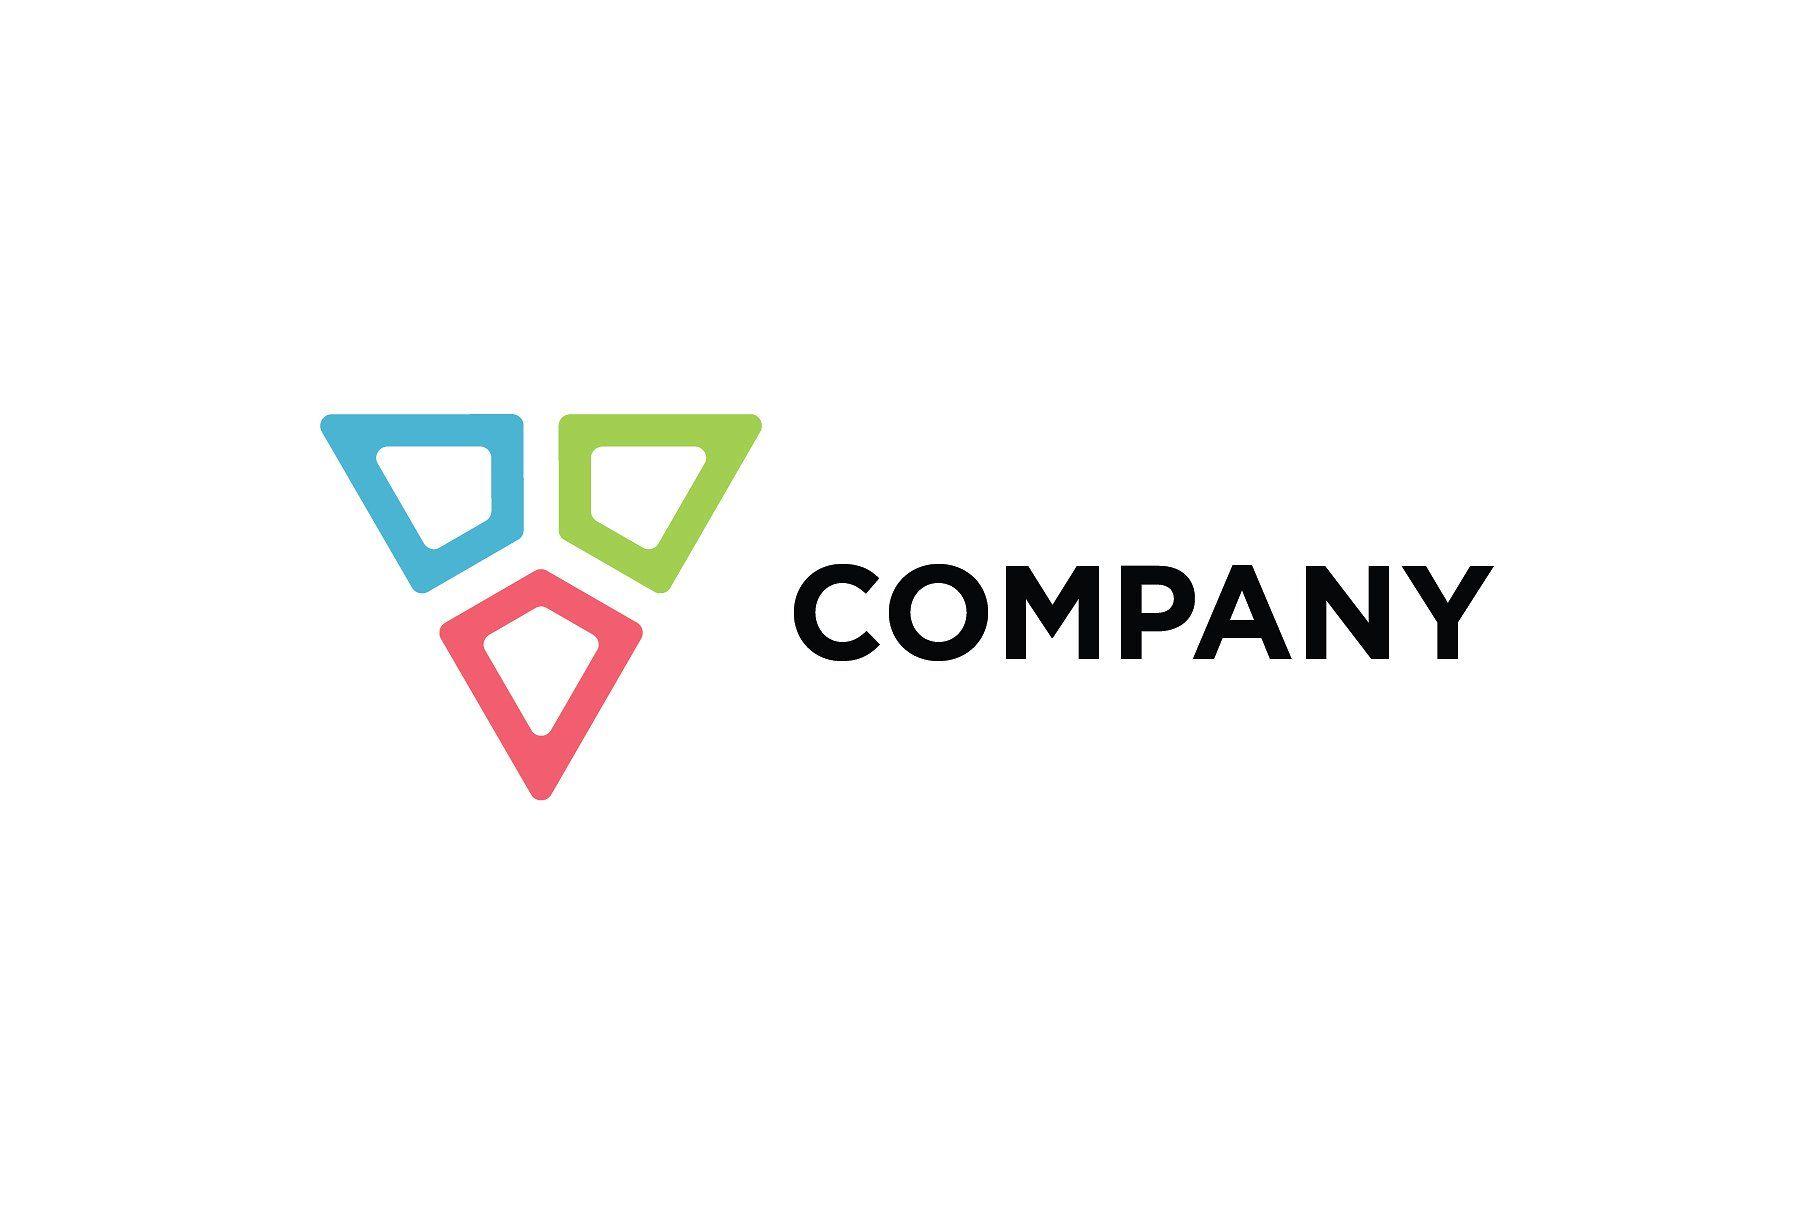 Triangle Company Logo - Abstract Triangle Logo Logo Templates Creative Market